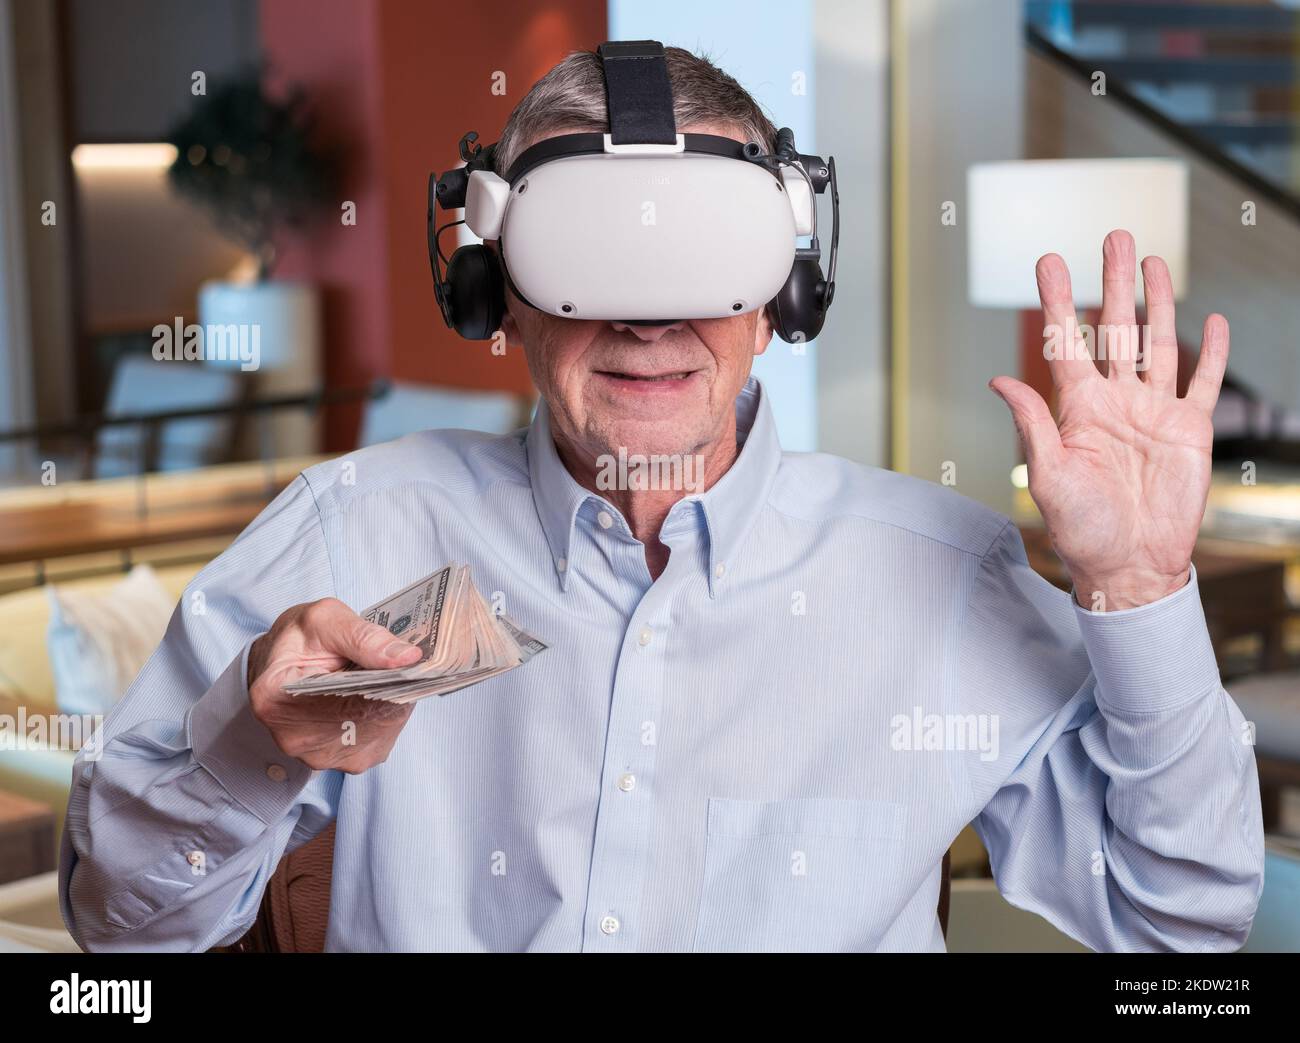 Konzept der Cyberkriminalität: Ältere Erwachsene zahlen Bargeld, während sie ein Virtual-Reality-Headset tragen Stockfoto